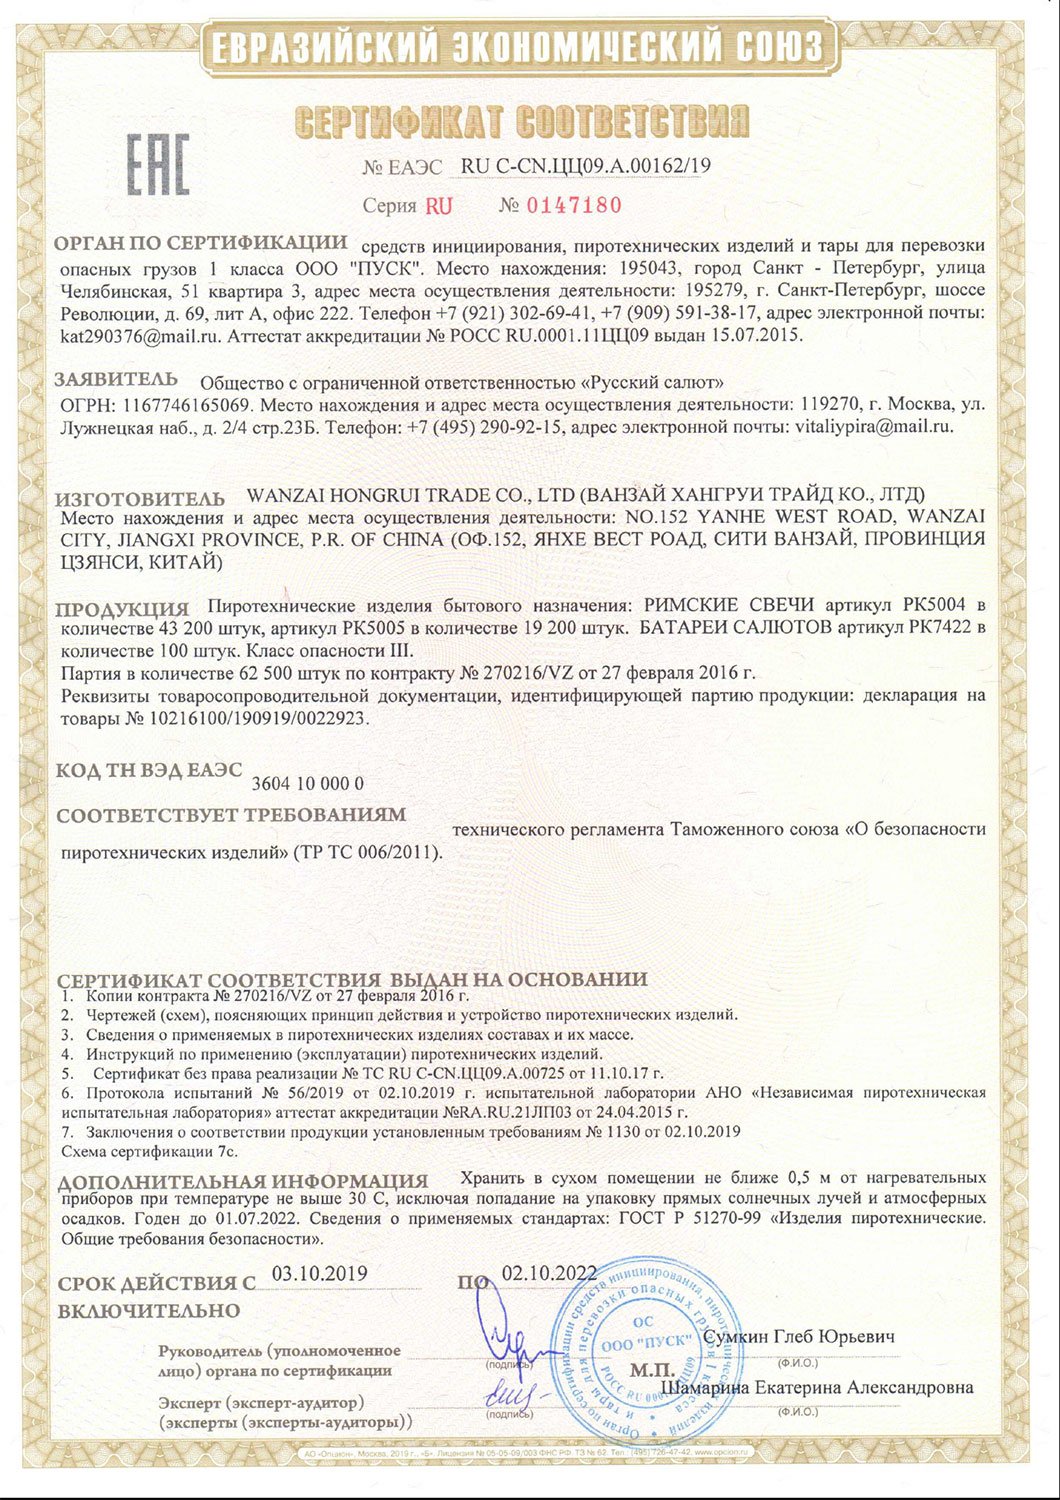 Сертификат Новогодний гудёж 1,0" х 145 (арт. РК7422)